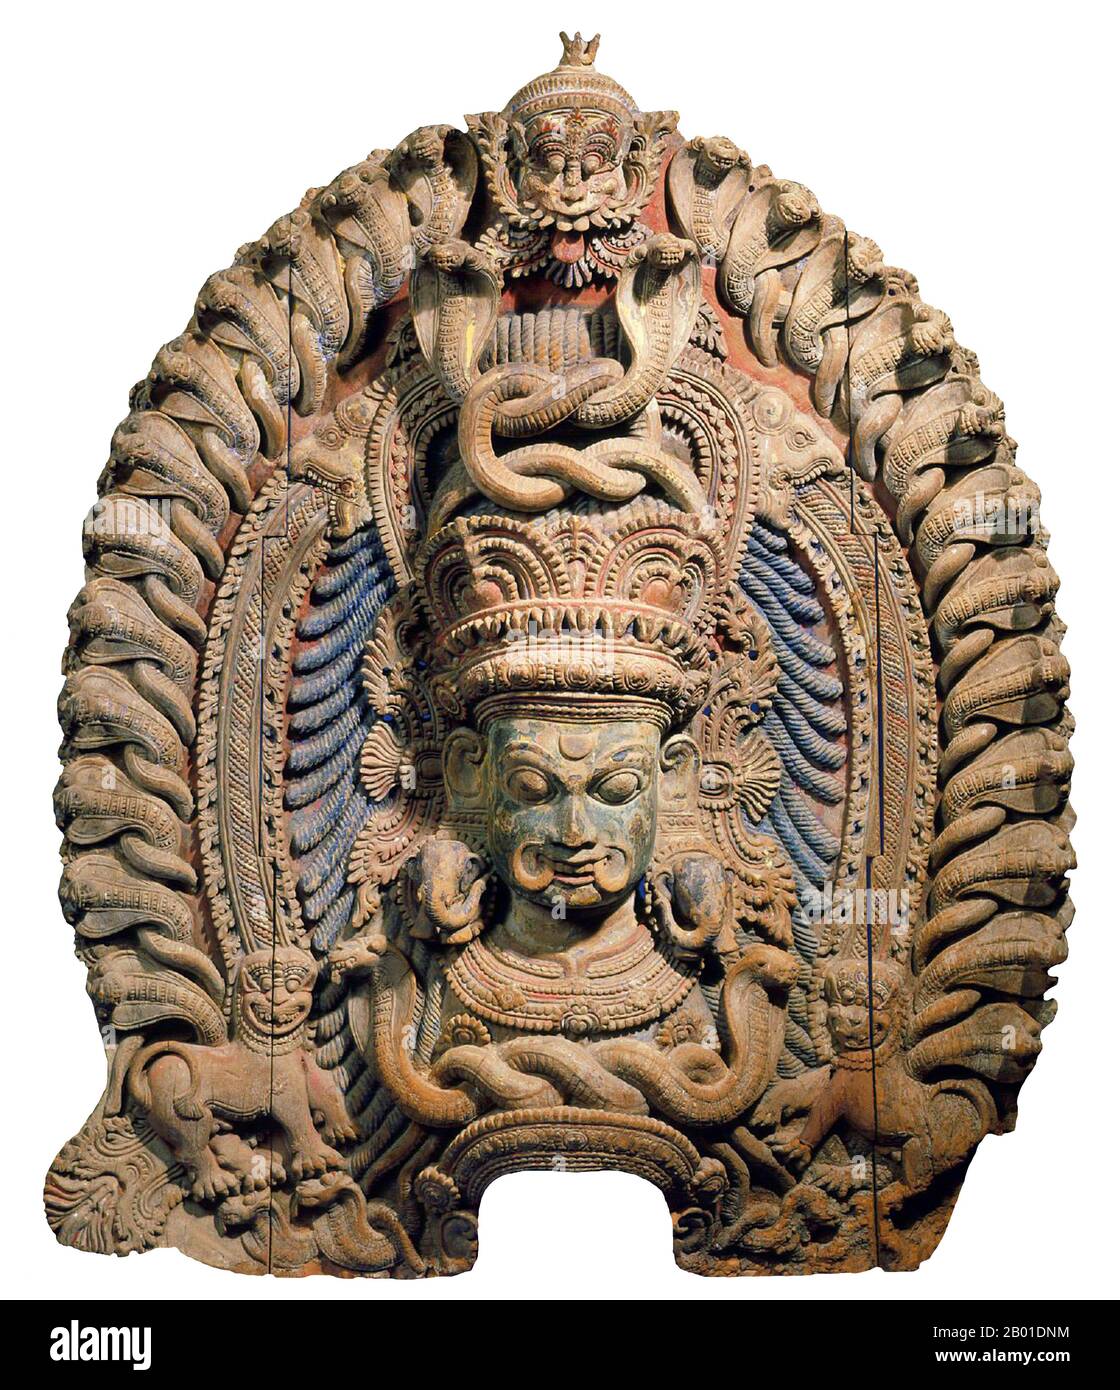 India: Tocado de bailarín de la diosa Kali. Escultura de madera pintada, Kerala, finales del siglo 15th. Kālī es la diosa hindú asociada con la energía eterna. 'Ella que destruye'.El nombre Kali viene de kāla, que significa negro, tiempo, muerte, señor de la muerte, Shiva. Kali significa 'el negro'. Puesto que Shiva es llamado Kāla - el tiempo eterno, Kālī, su consorte, también significa 'tiempo' o 'muerte' (como en el tiempo ha llegado). Por lo tanto, Kali es considerada la diosa del tiempo y del cambio. Aunque a veces se presenta como oscura y violenta, su primera encarnación como una figura de aniquilación todavía tiene cierta influencia. Foto de stock